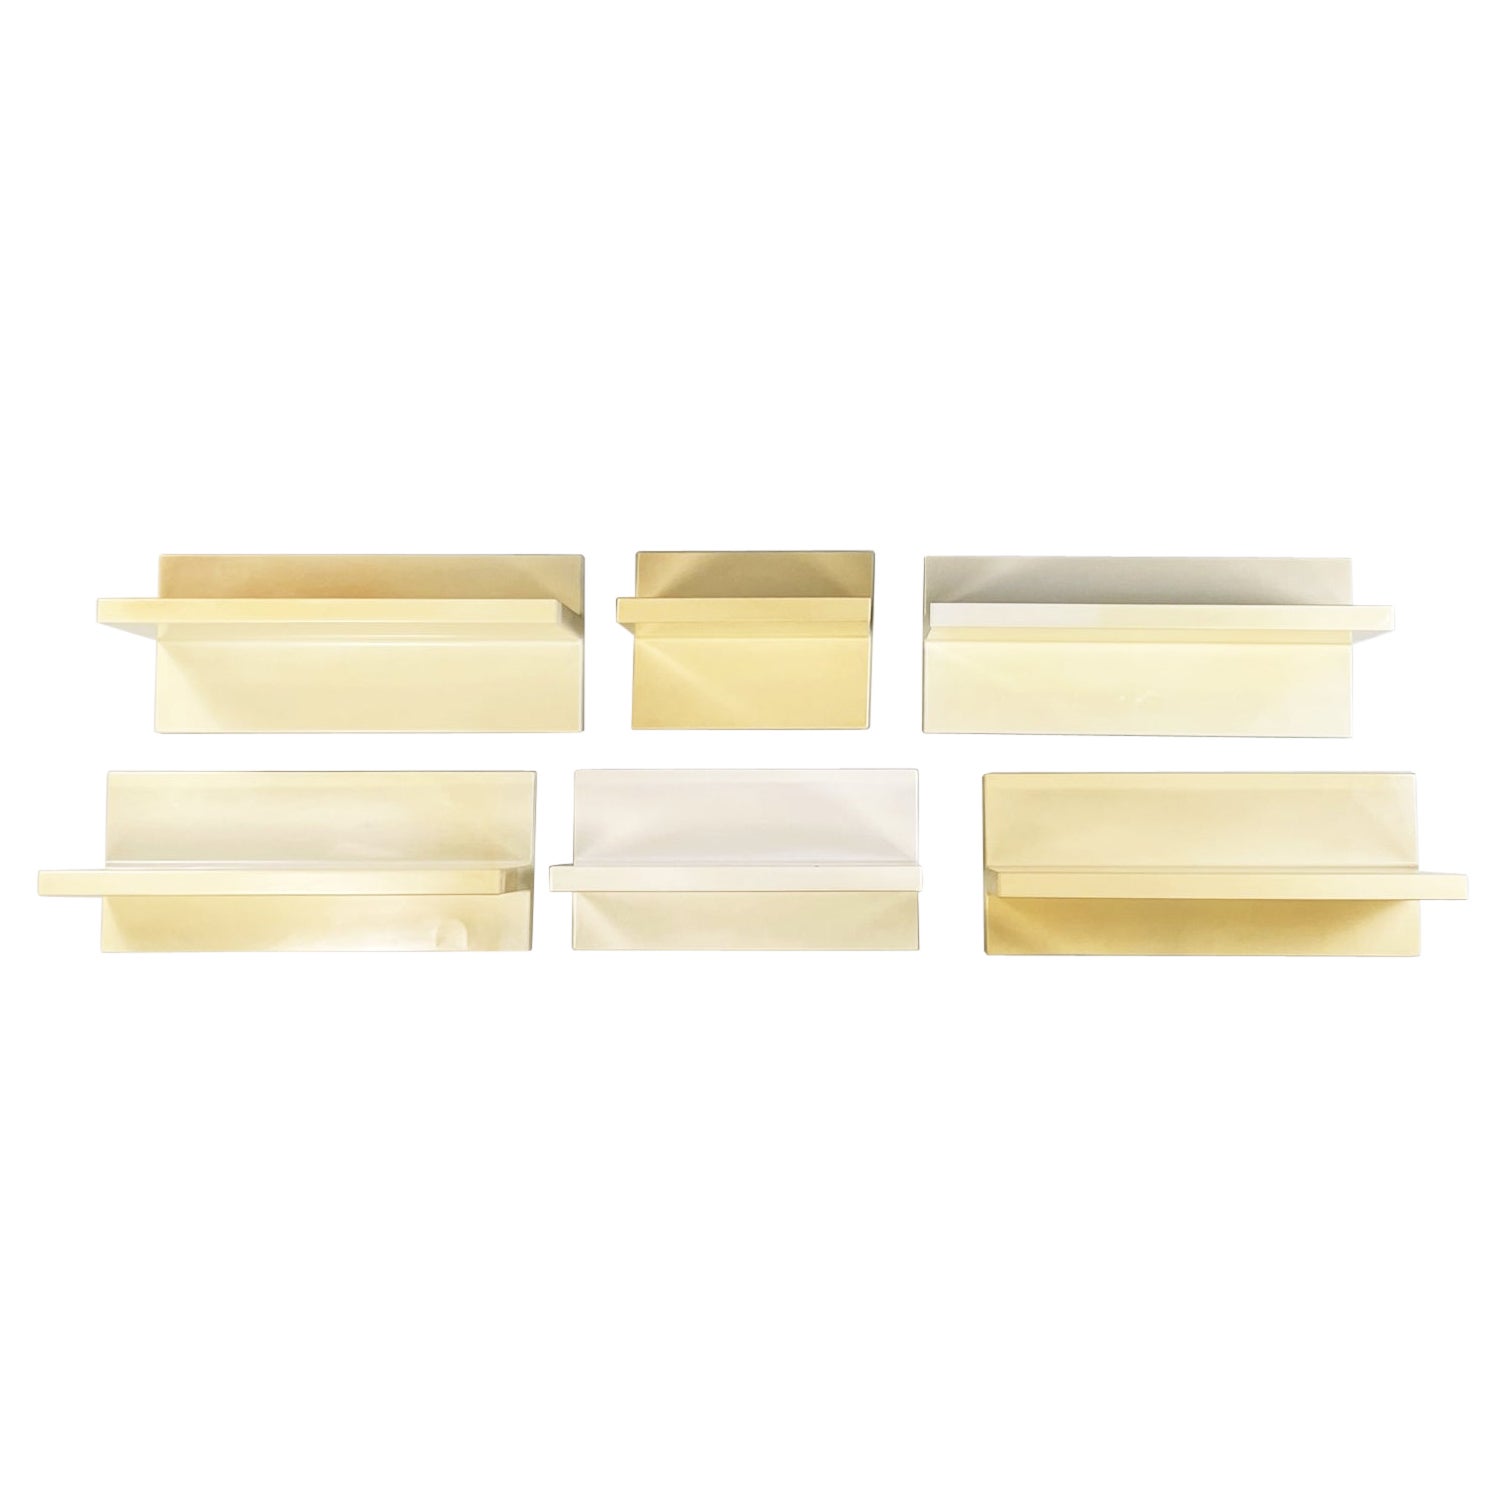 Italian Modern Cream White Plastic Shelves by Marcello Siard for Kartell, 1970s For Sale